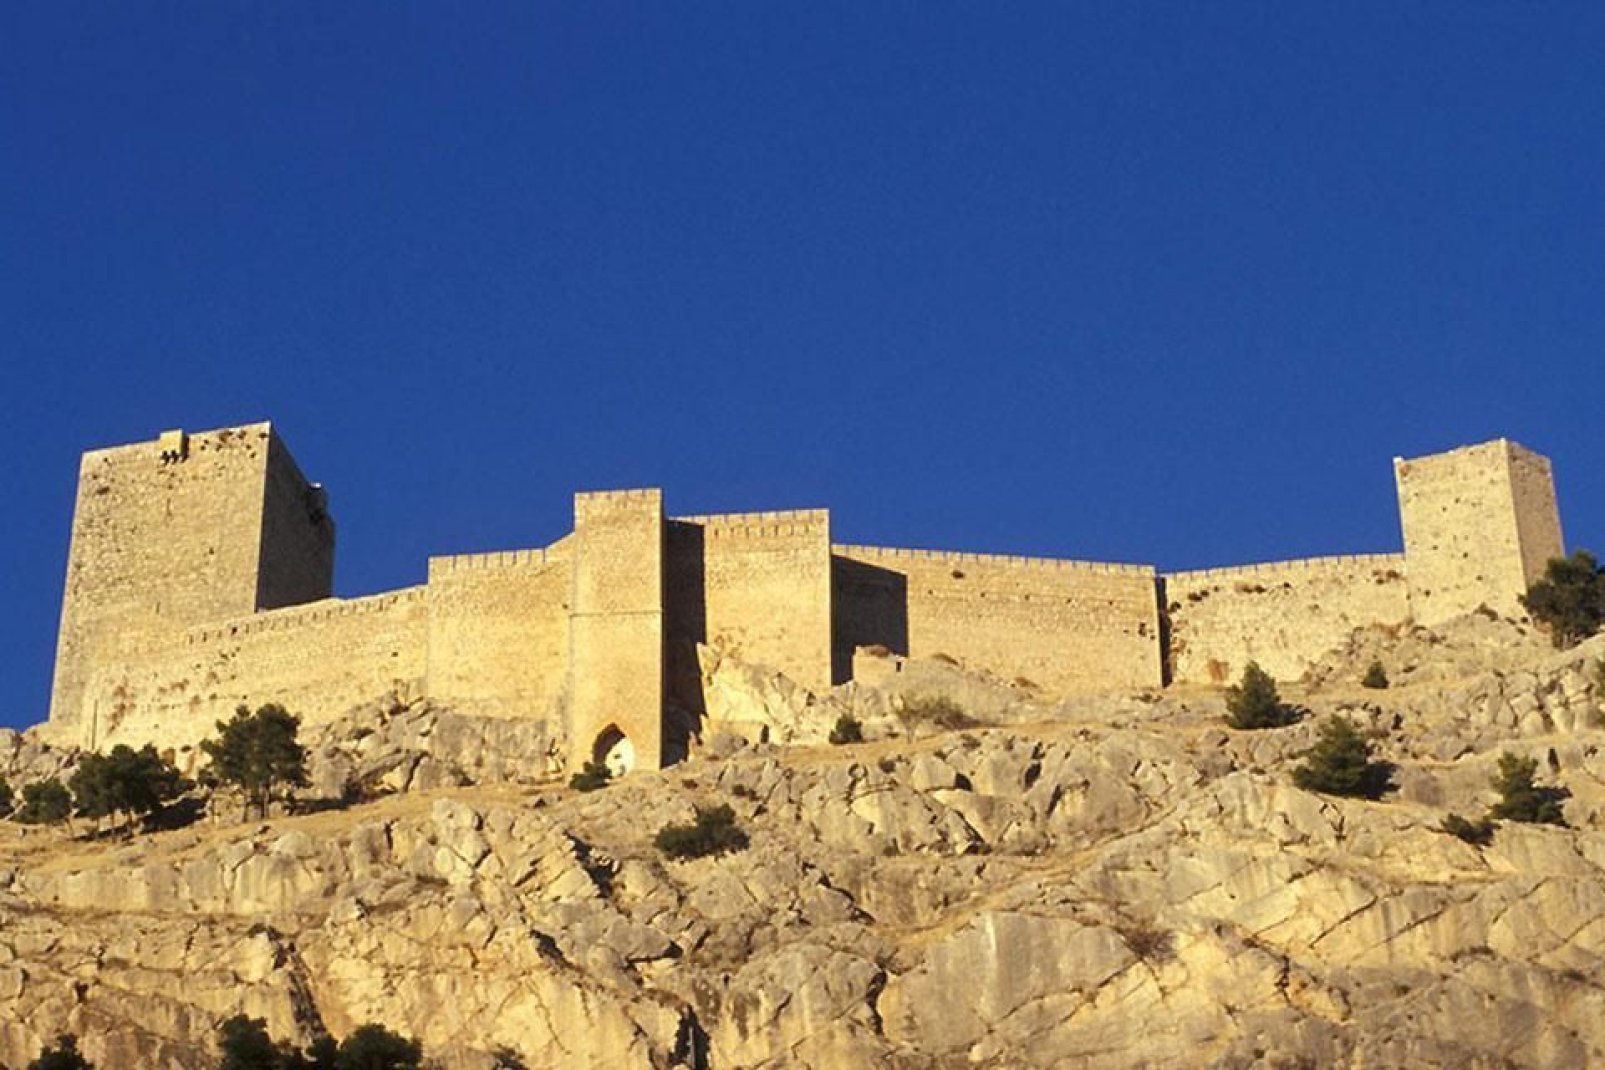 Questo castello gotico domina la città di Jaén. C'è tra l'altro un passaggio che lo collega alla città. Nella parte più alta si potrà apprezzare una vista mozzafiato su Jaén e sulle montagne circostanti.